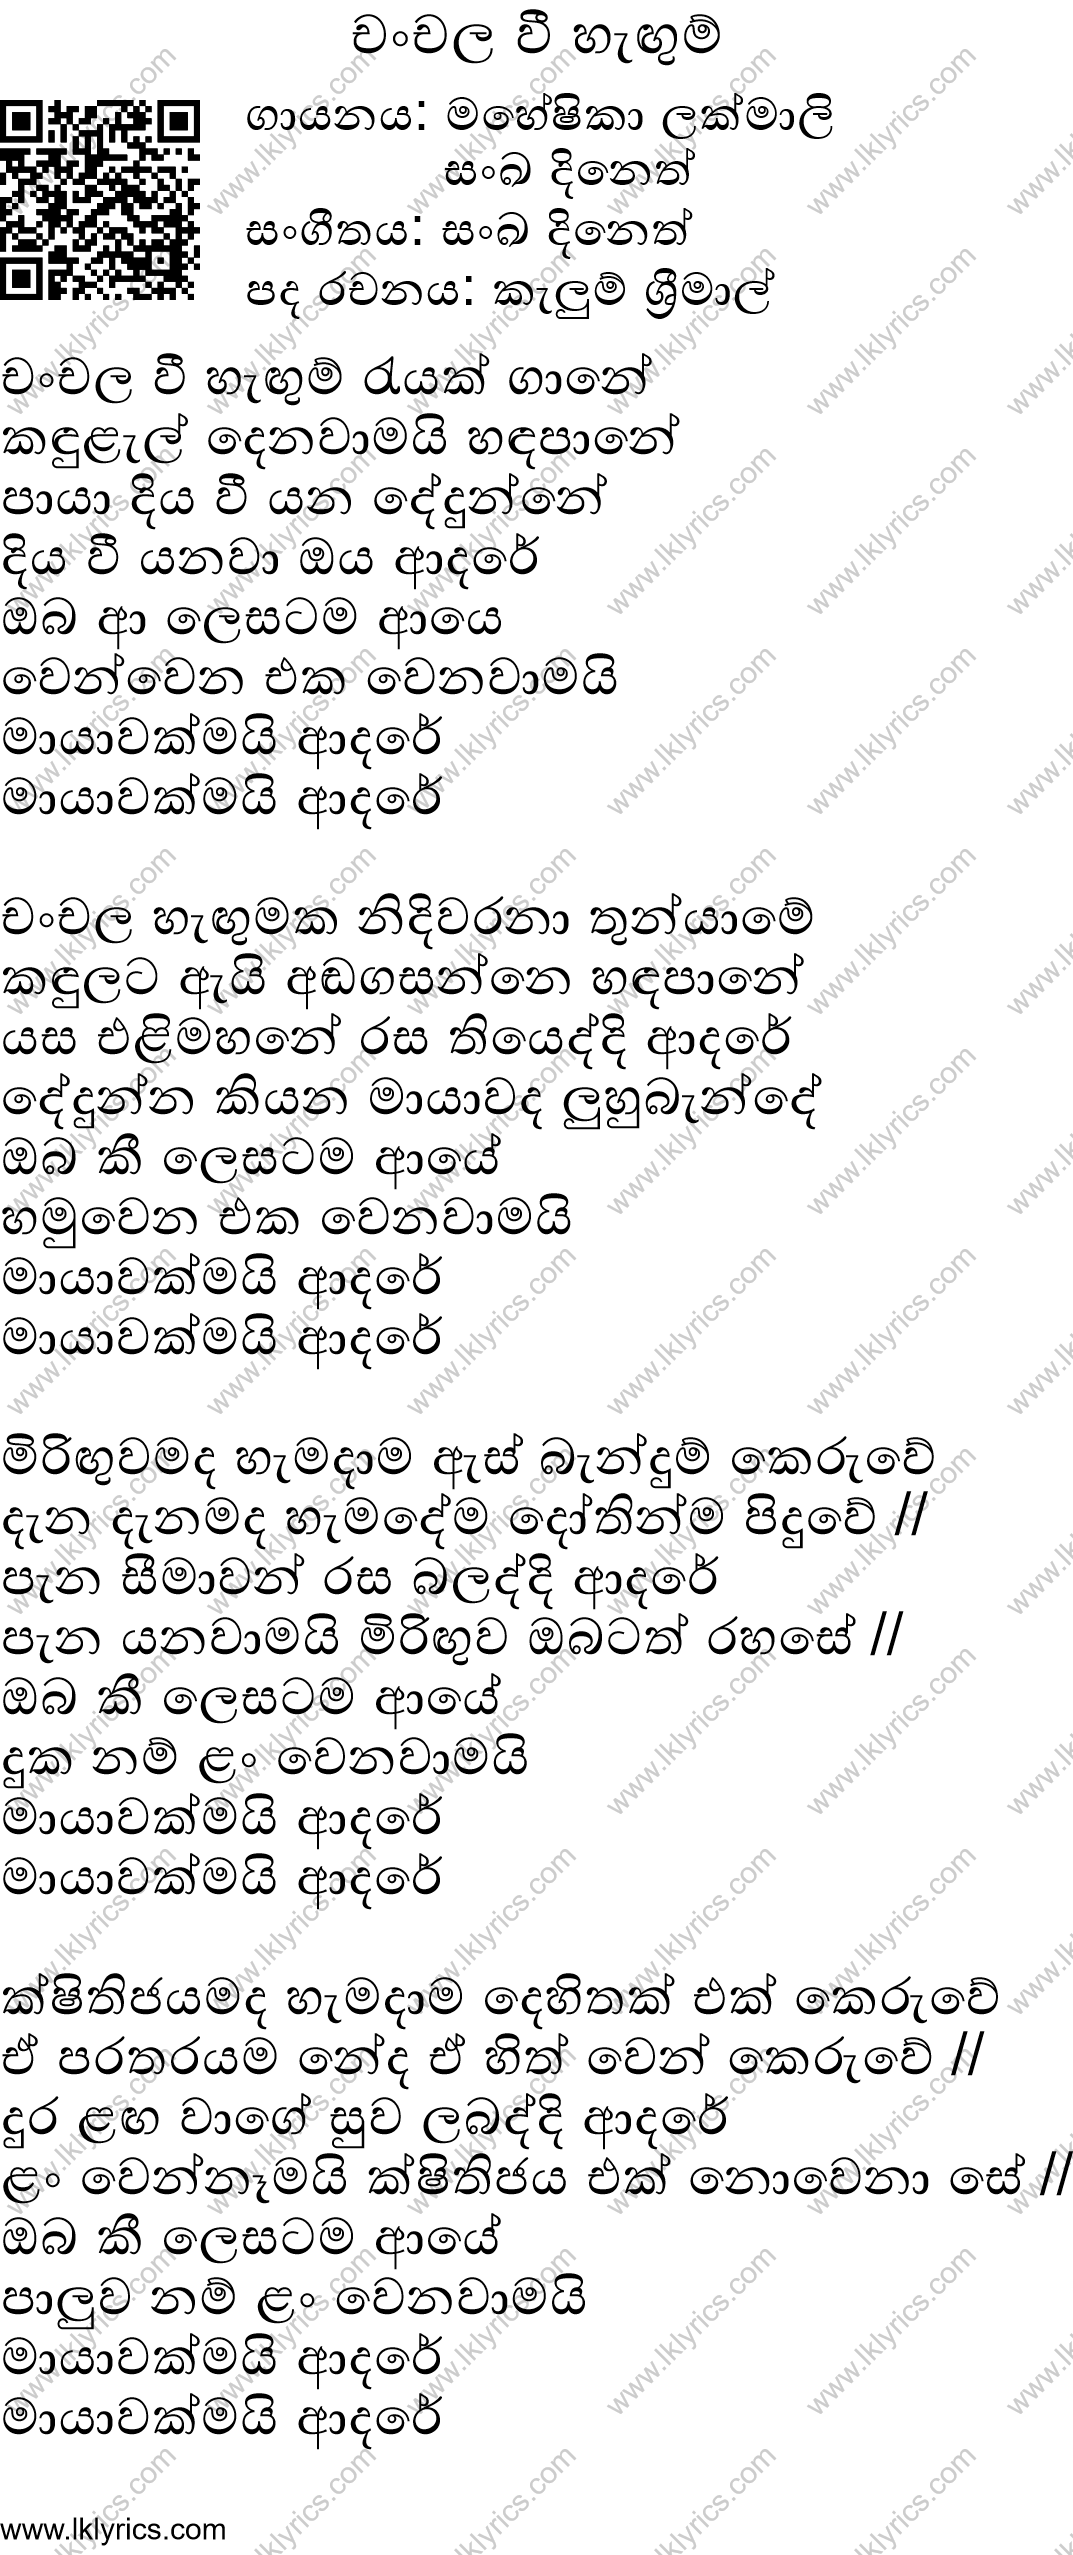 Chanchala Hegumaka Lyrics